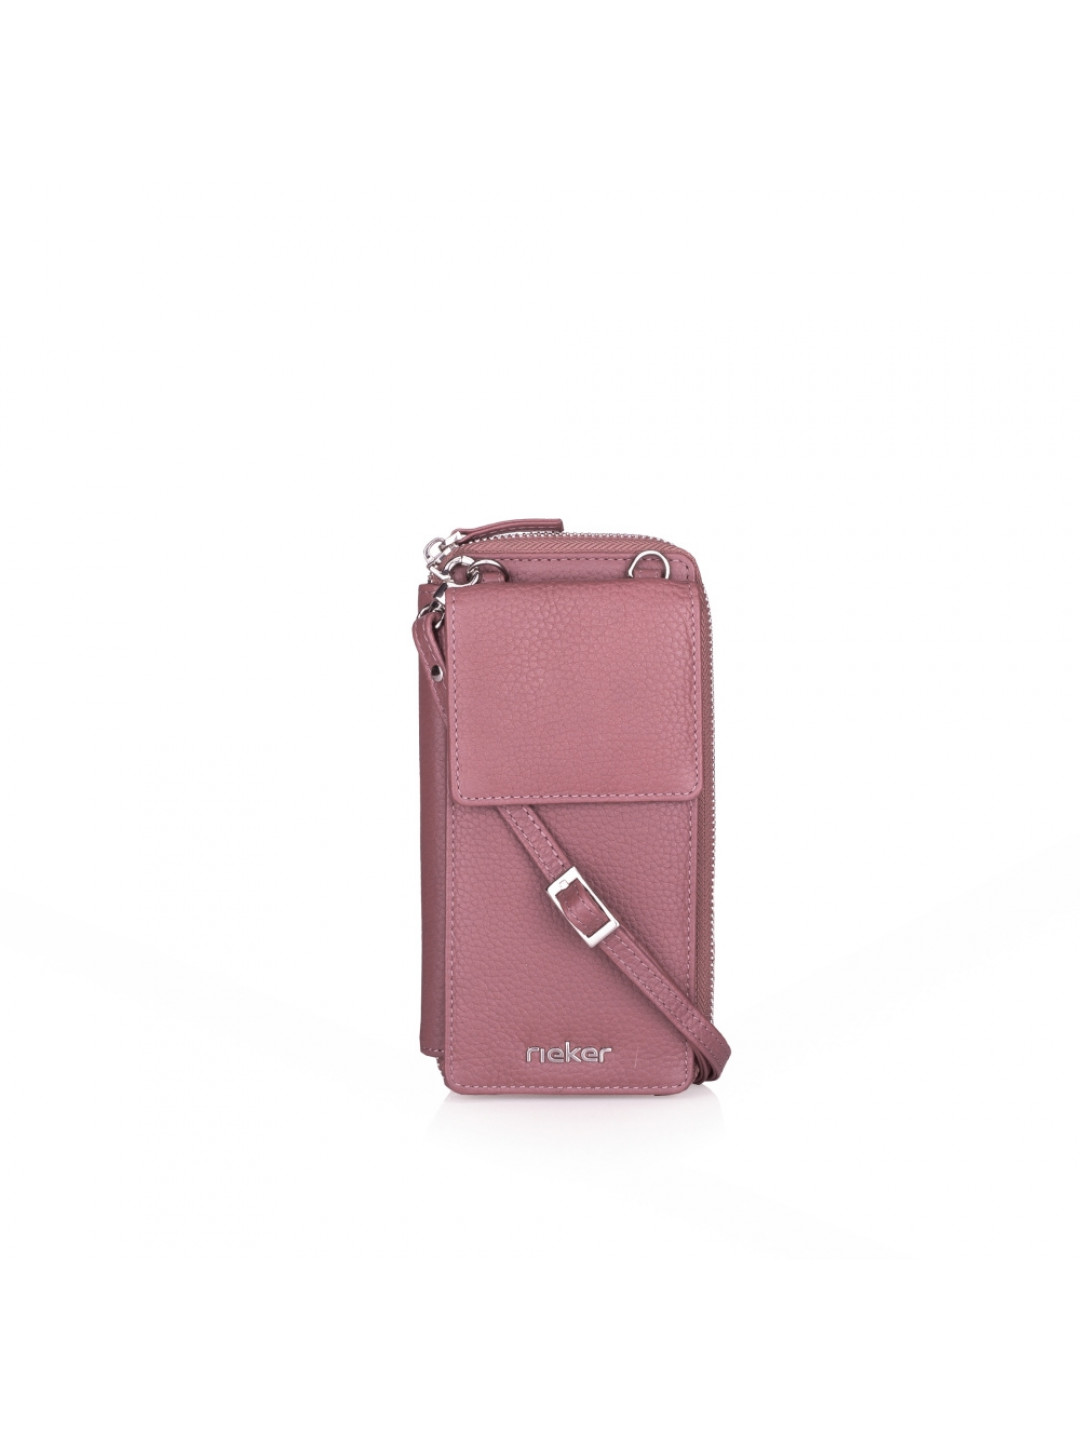 Dámská kabelka RIEKER W169 růžová S4